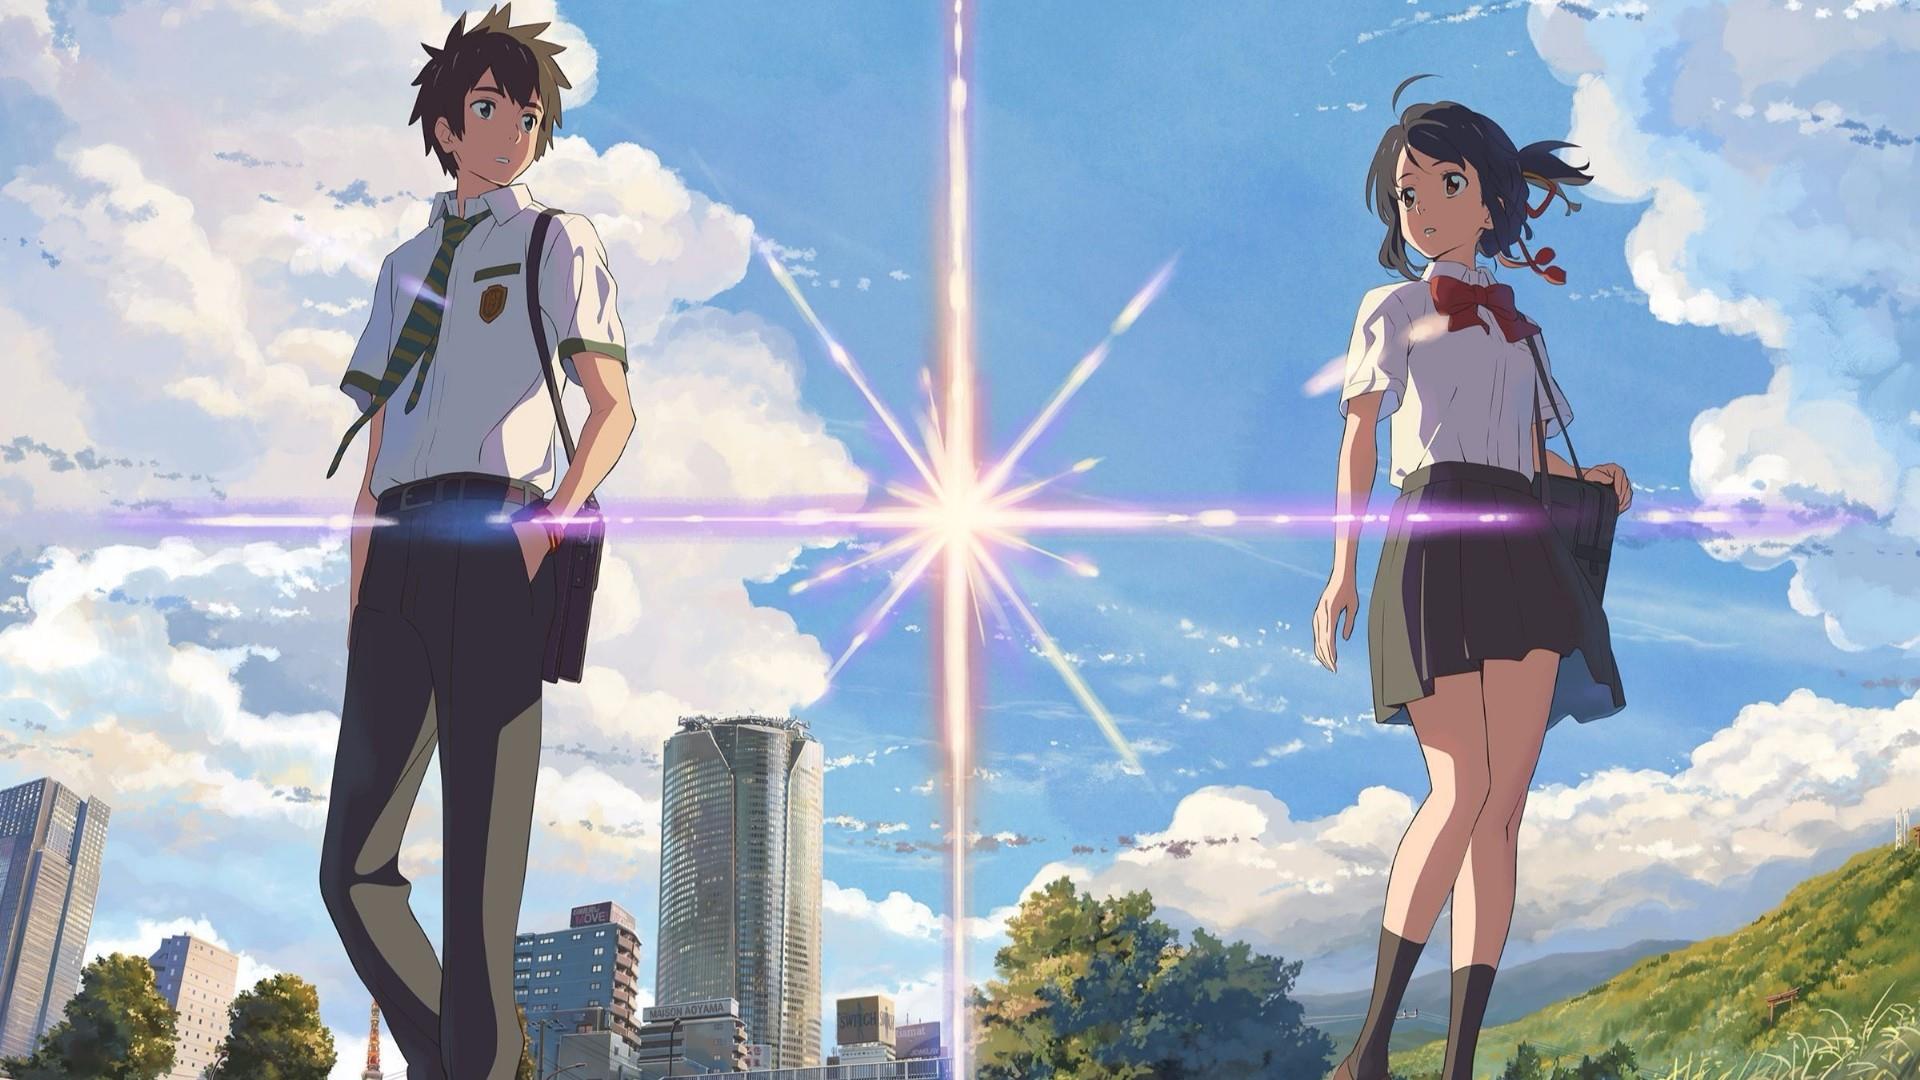 Anime Anime Girls Anime Boys Kimi No Na Wa School Uniform Clouds Sky Tie Bow Tie 1920x1080